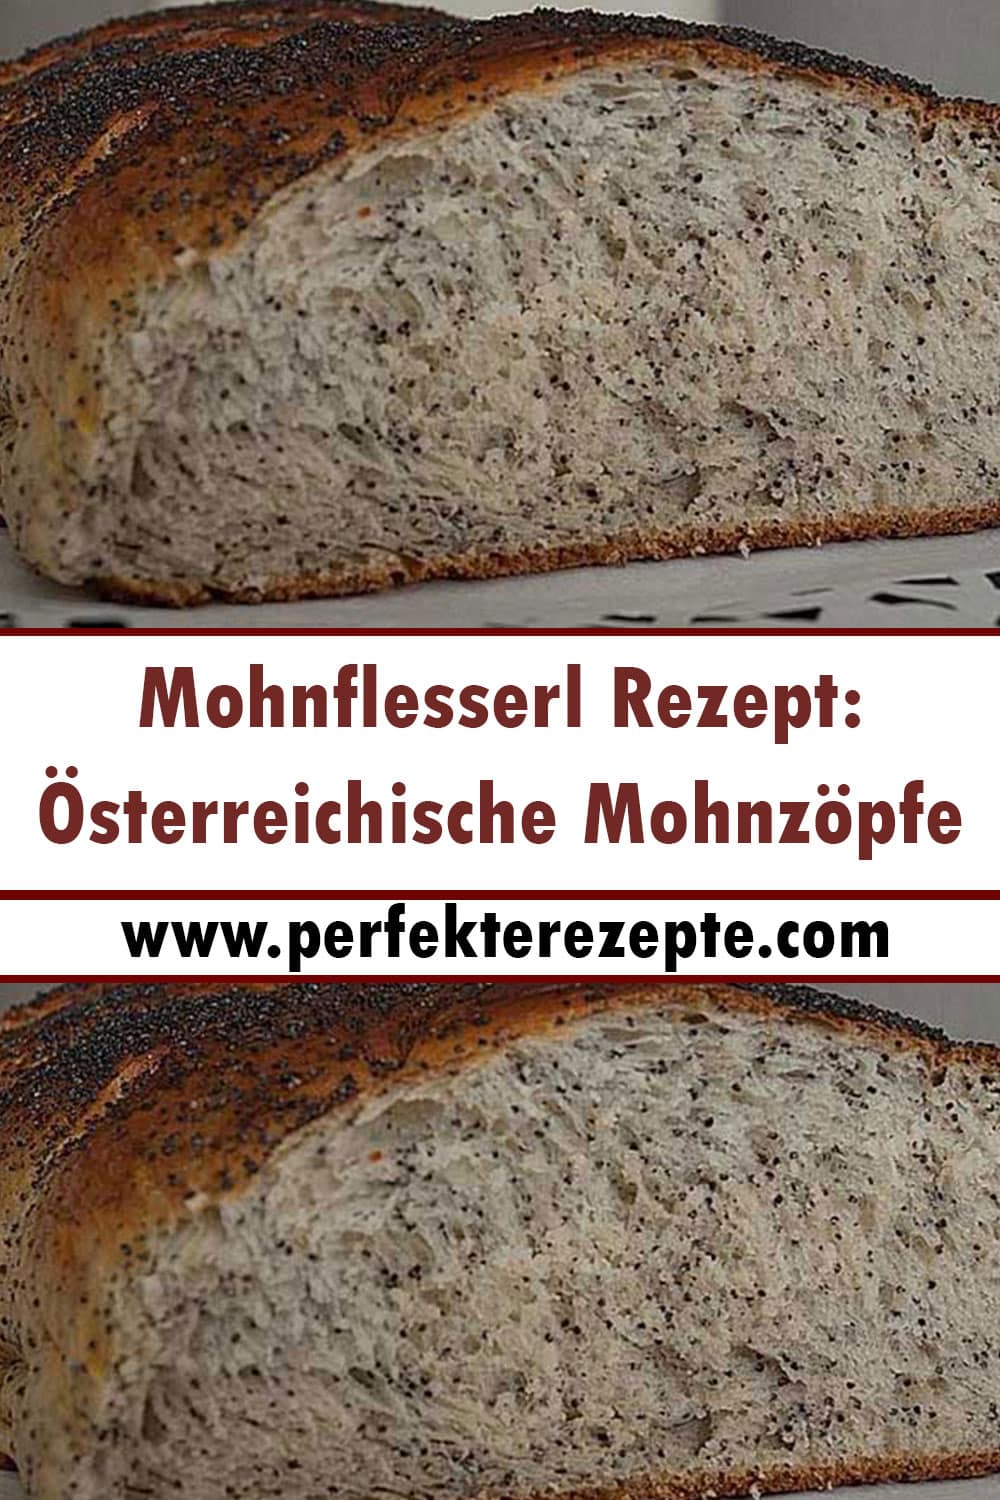 Mohnflesserl: Österreichische Mohnzöpfe Rezept